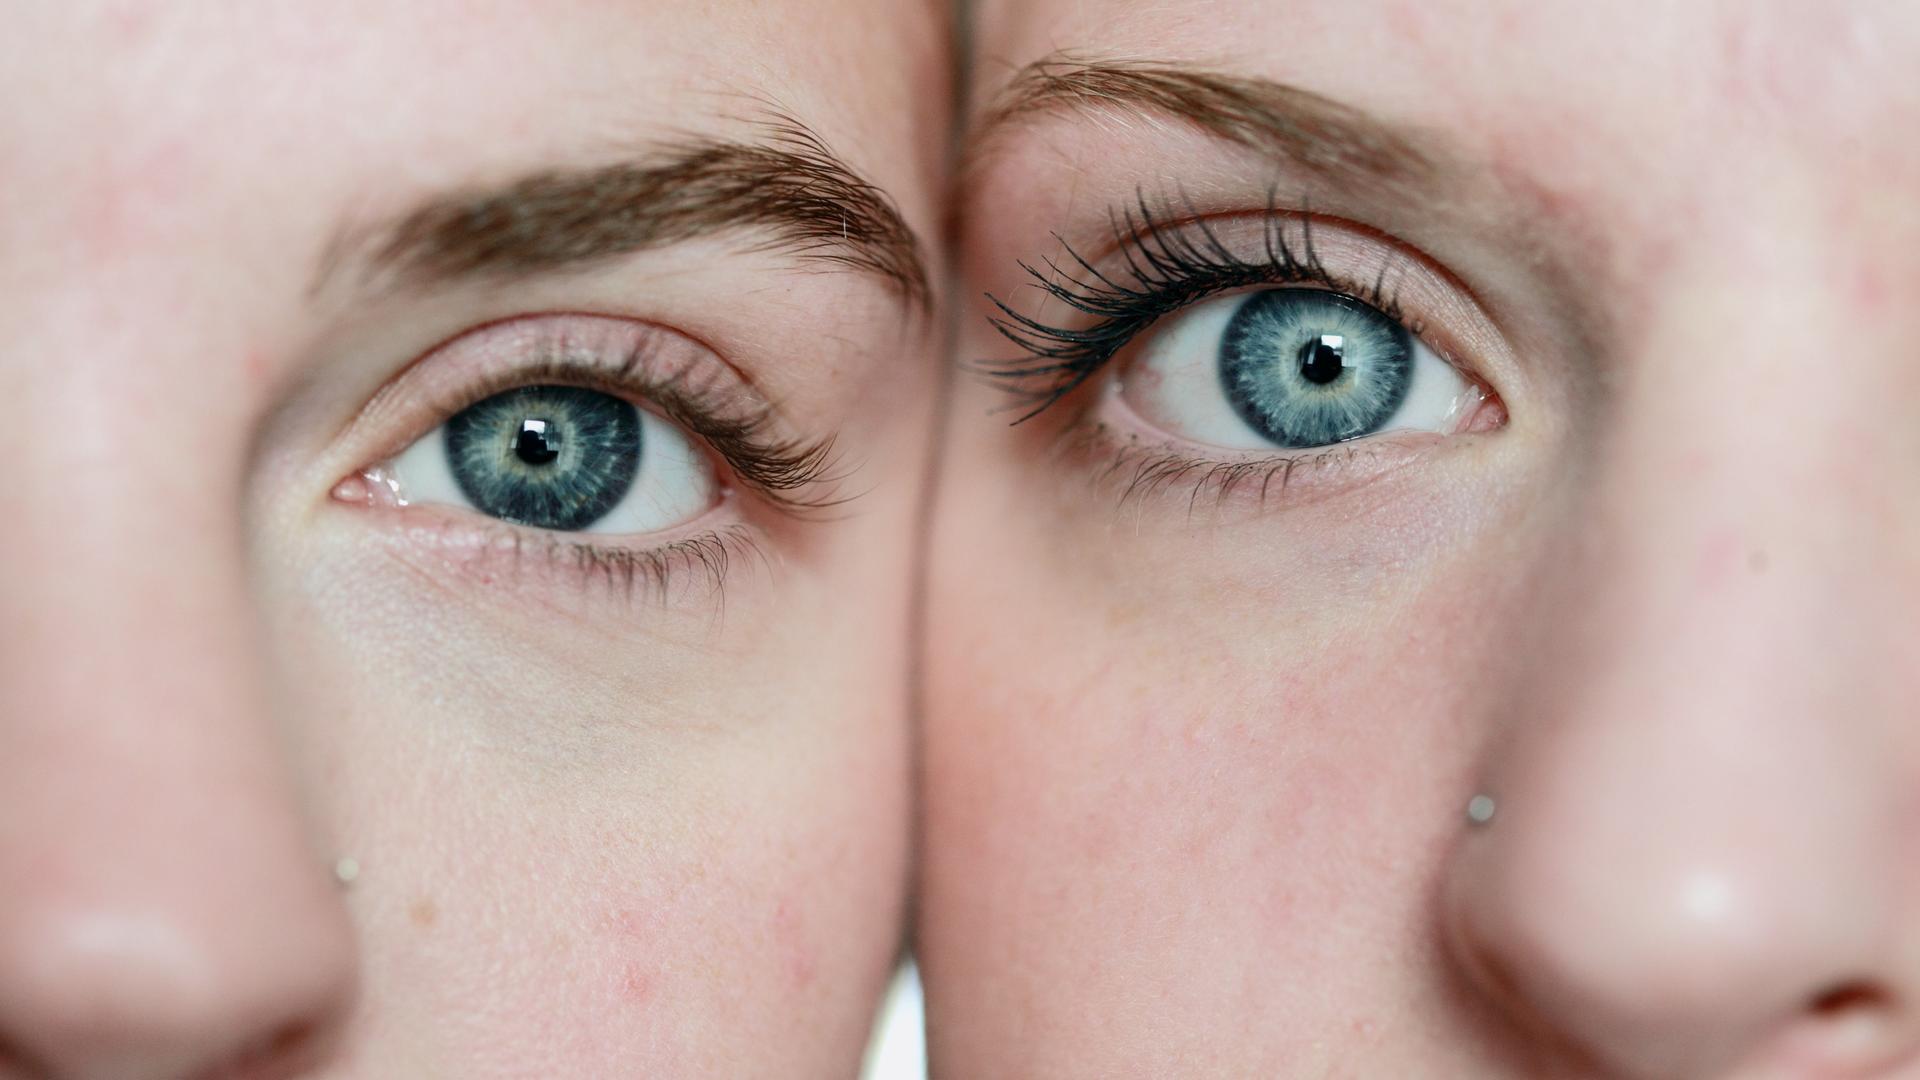 Zwei Frauen stehen nah beieinander, nur die Augen und die Nasen sind zu erkennen.